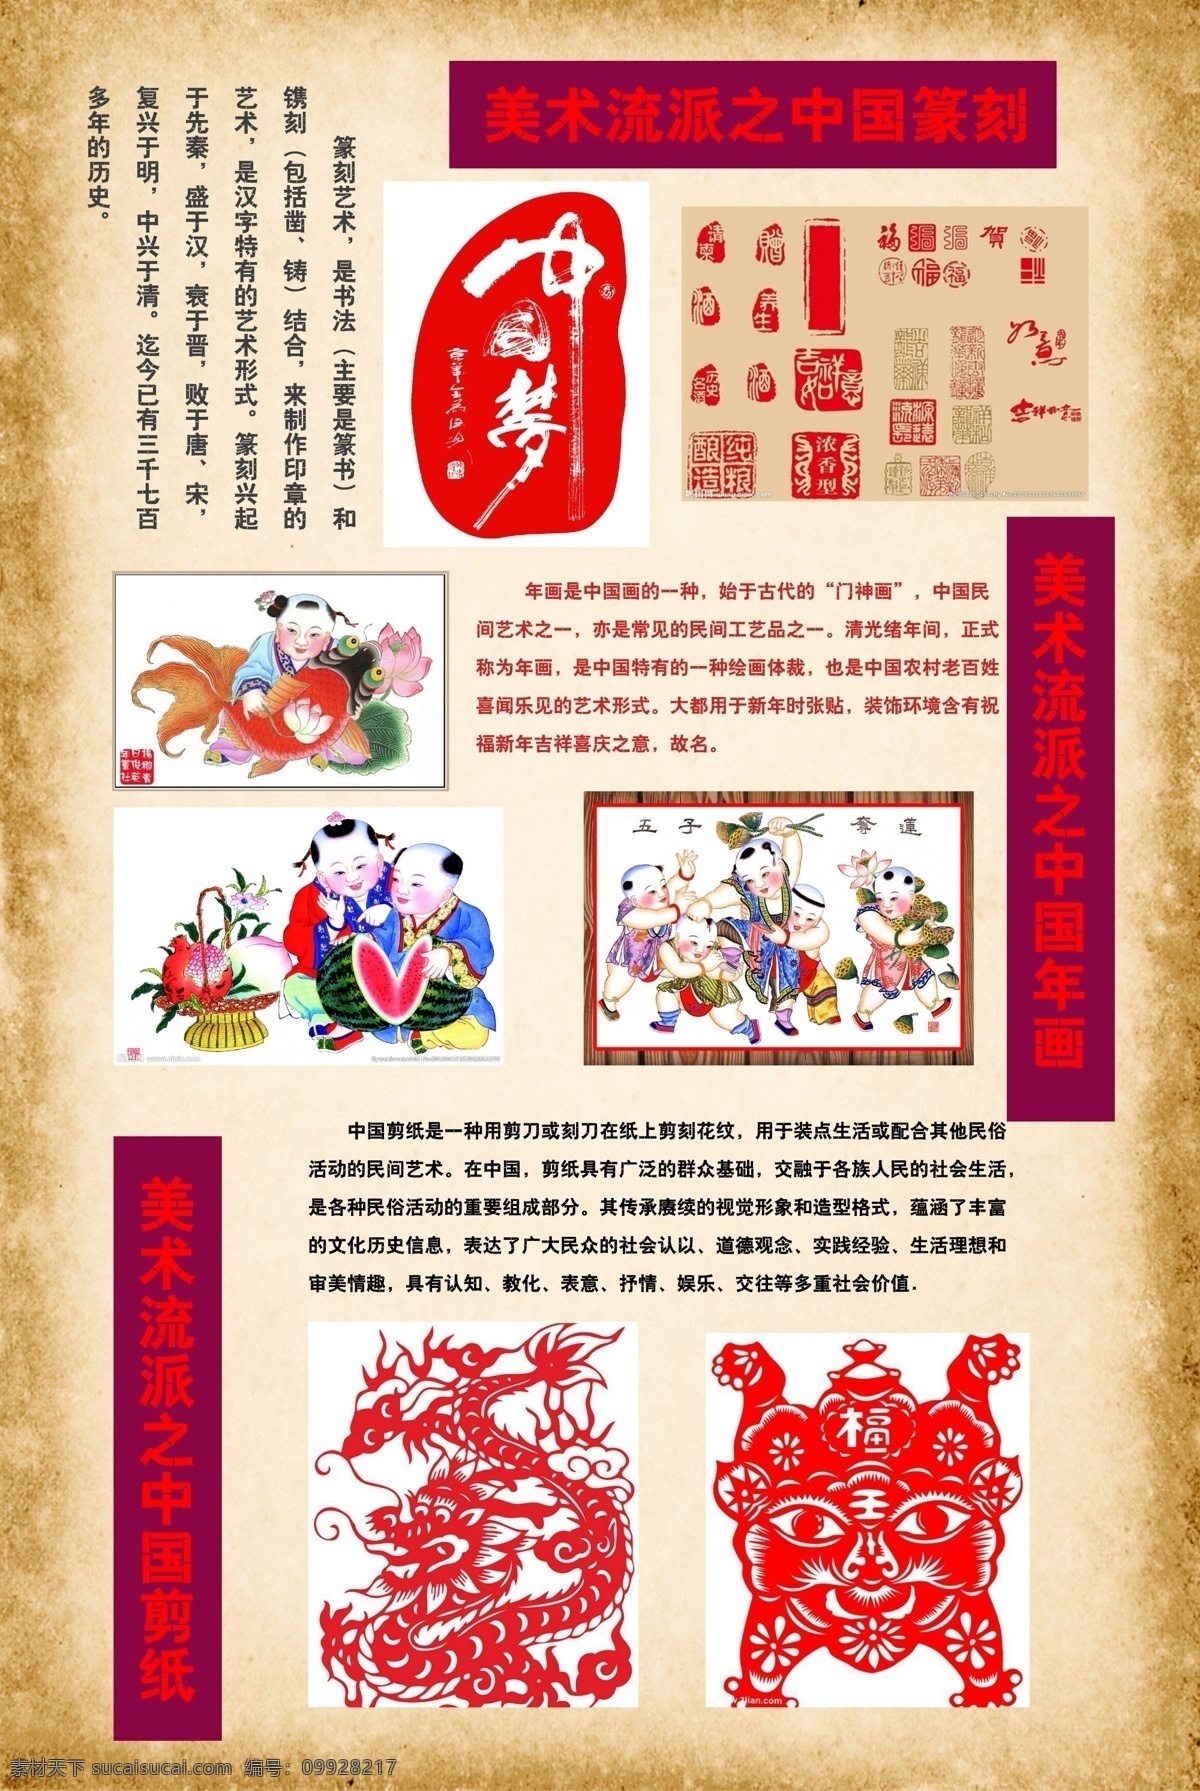 美术 绘画 中国 校园文化 中国美术